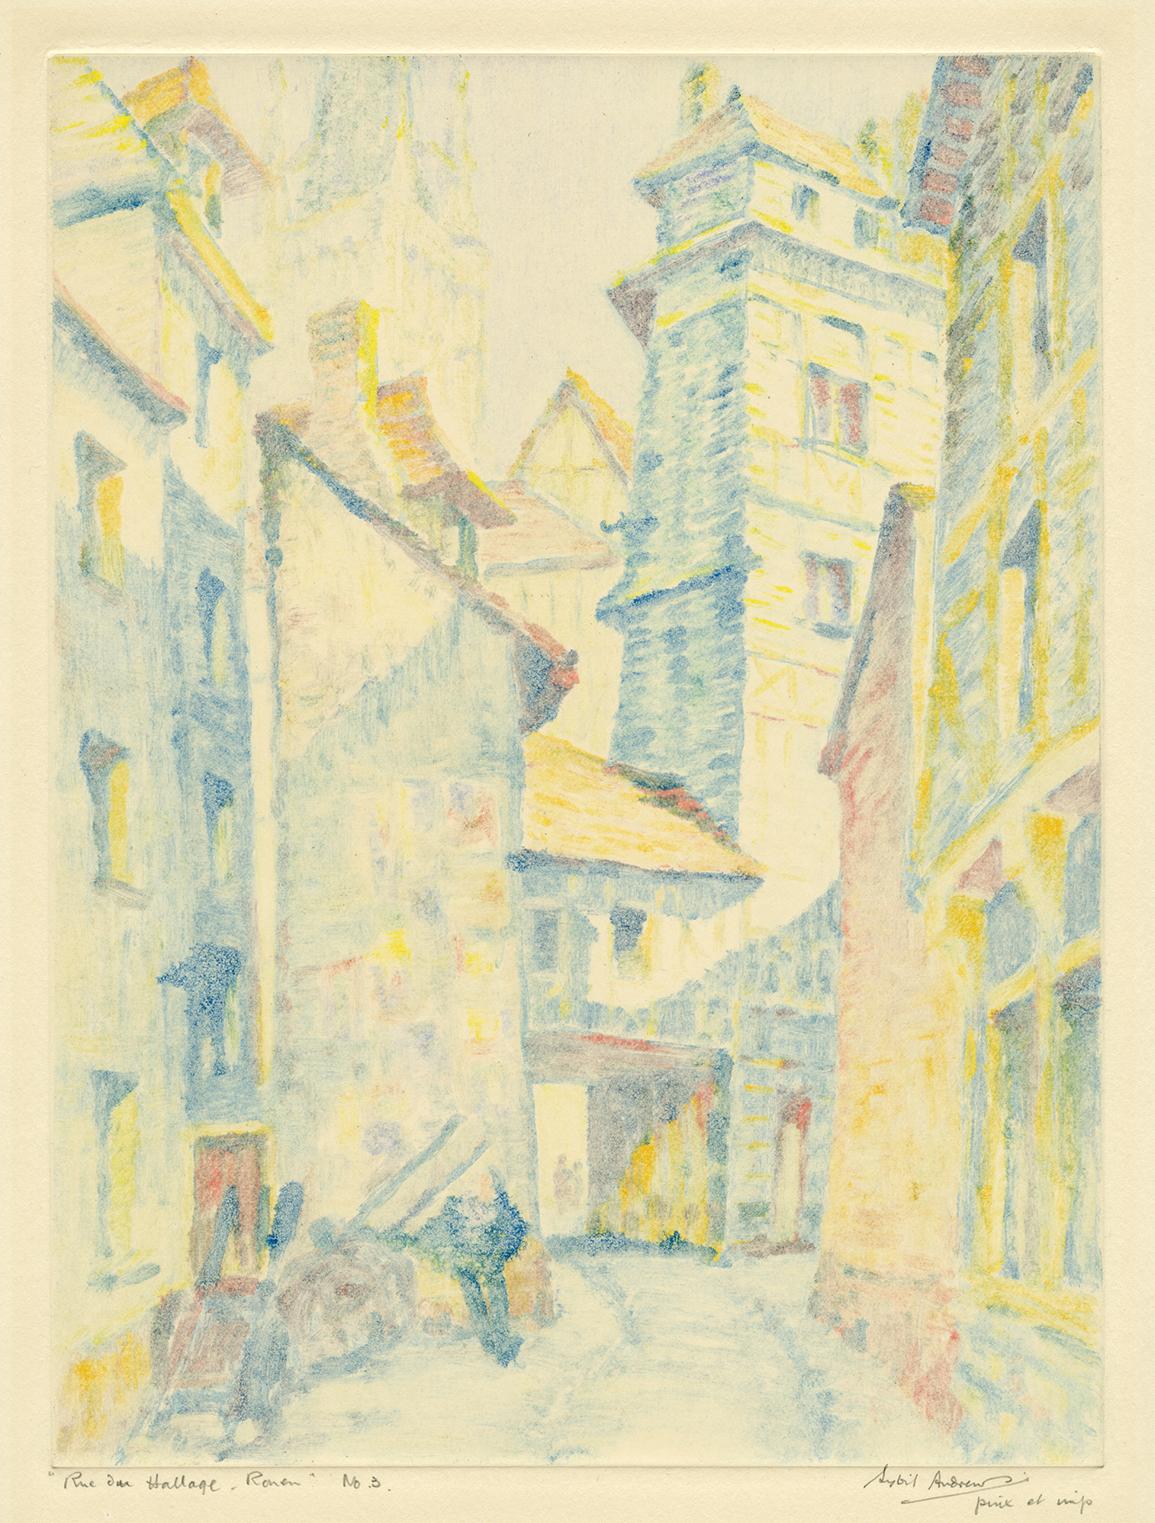 Sybil Andrews Figurative Print – Rue du Hallage - Rouen" - Britischer Impressionismus der 1920er Jahre